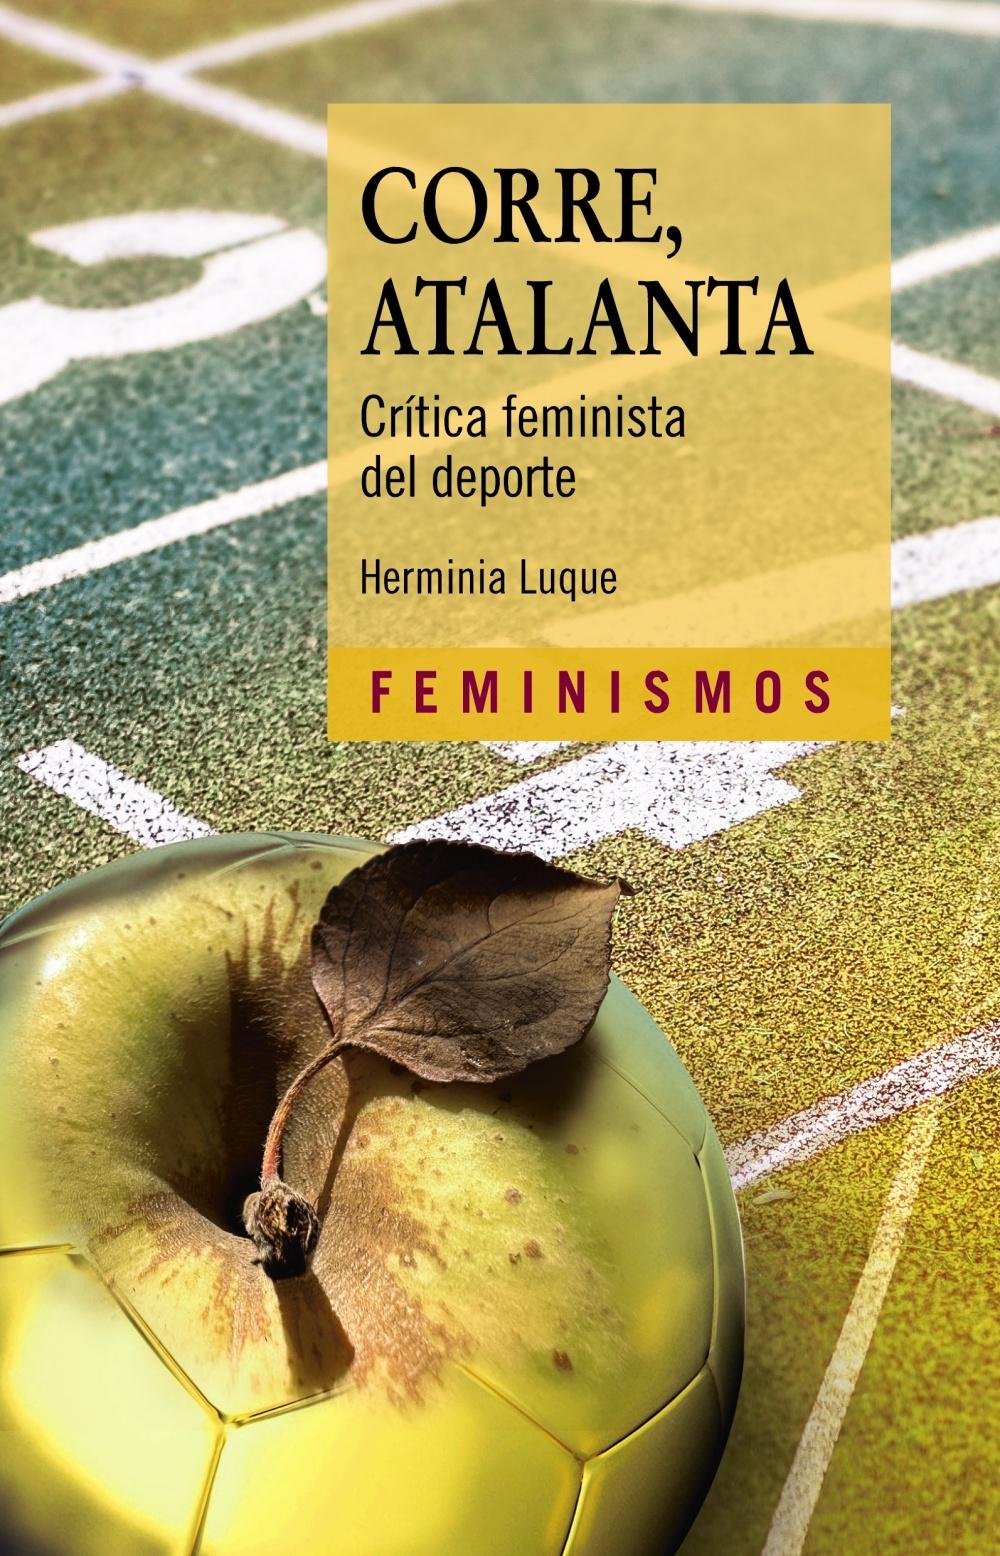 CORRE,ATLANTA "CRÍTICA FEMINISTA DEL DEPORTE". 